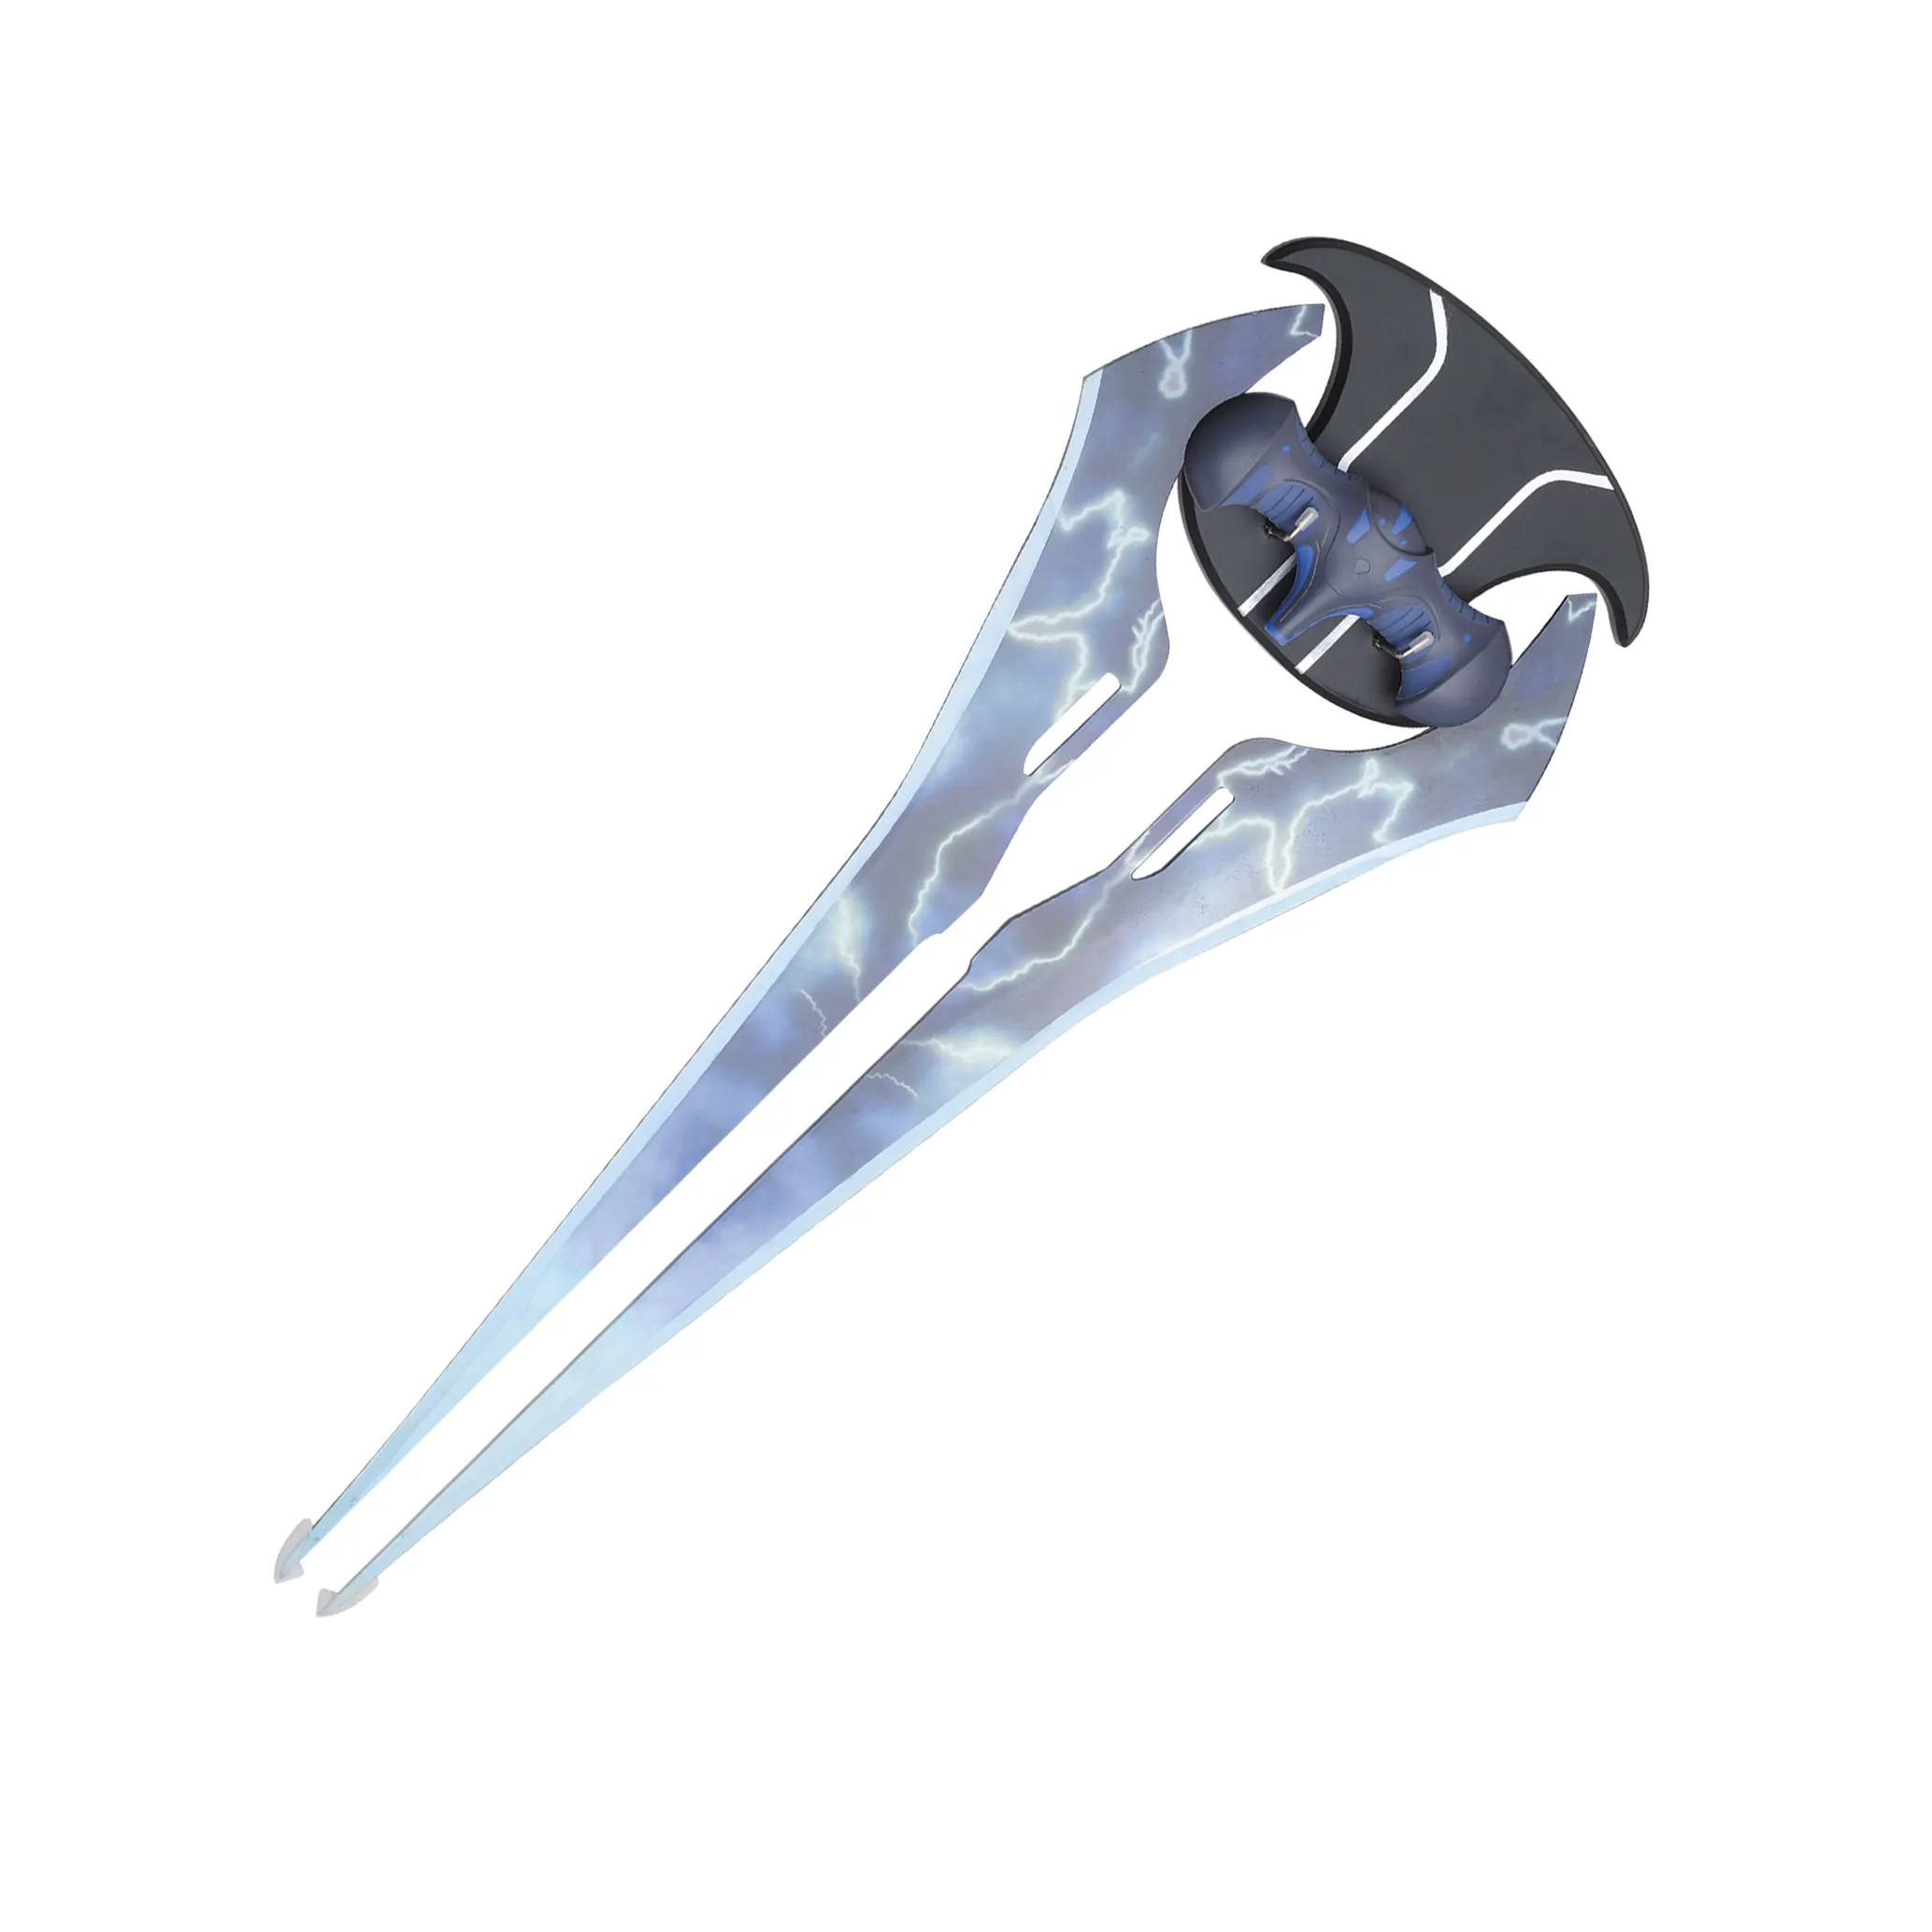 Halo A energia espada ferramentas Cosplay Acessórios do jogo